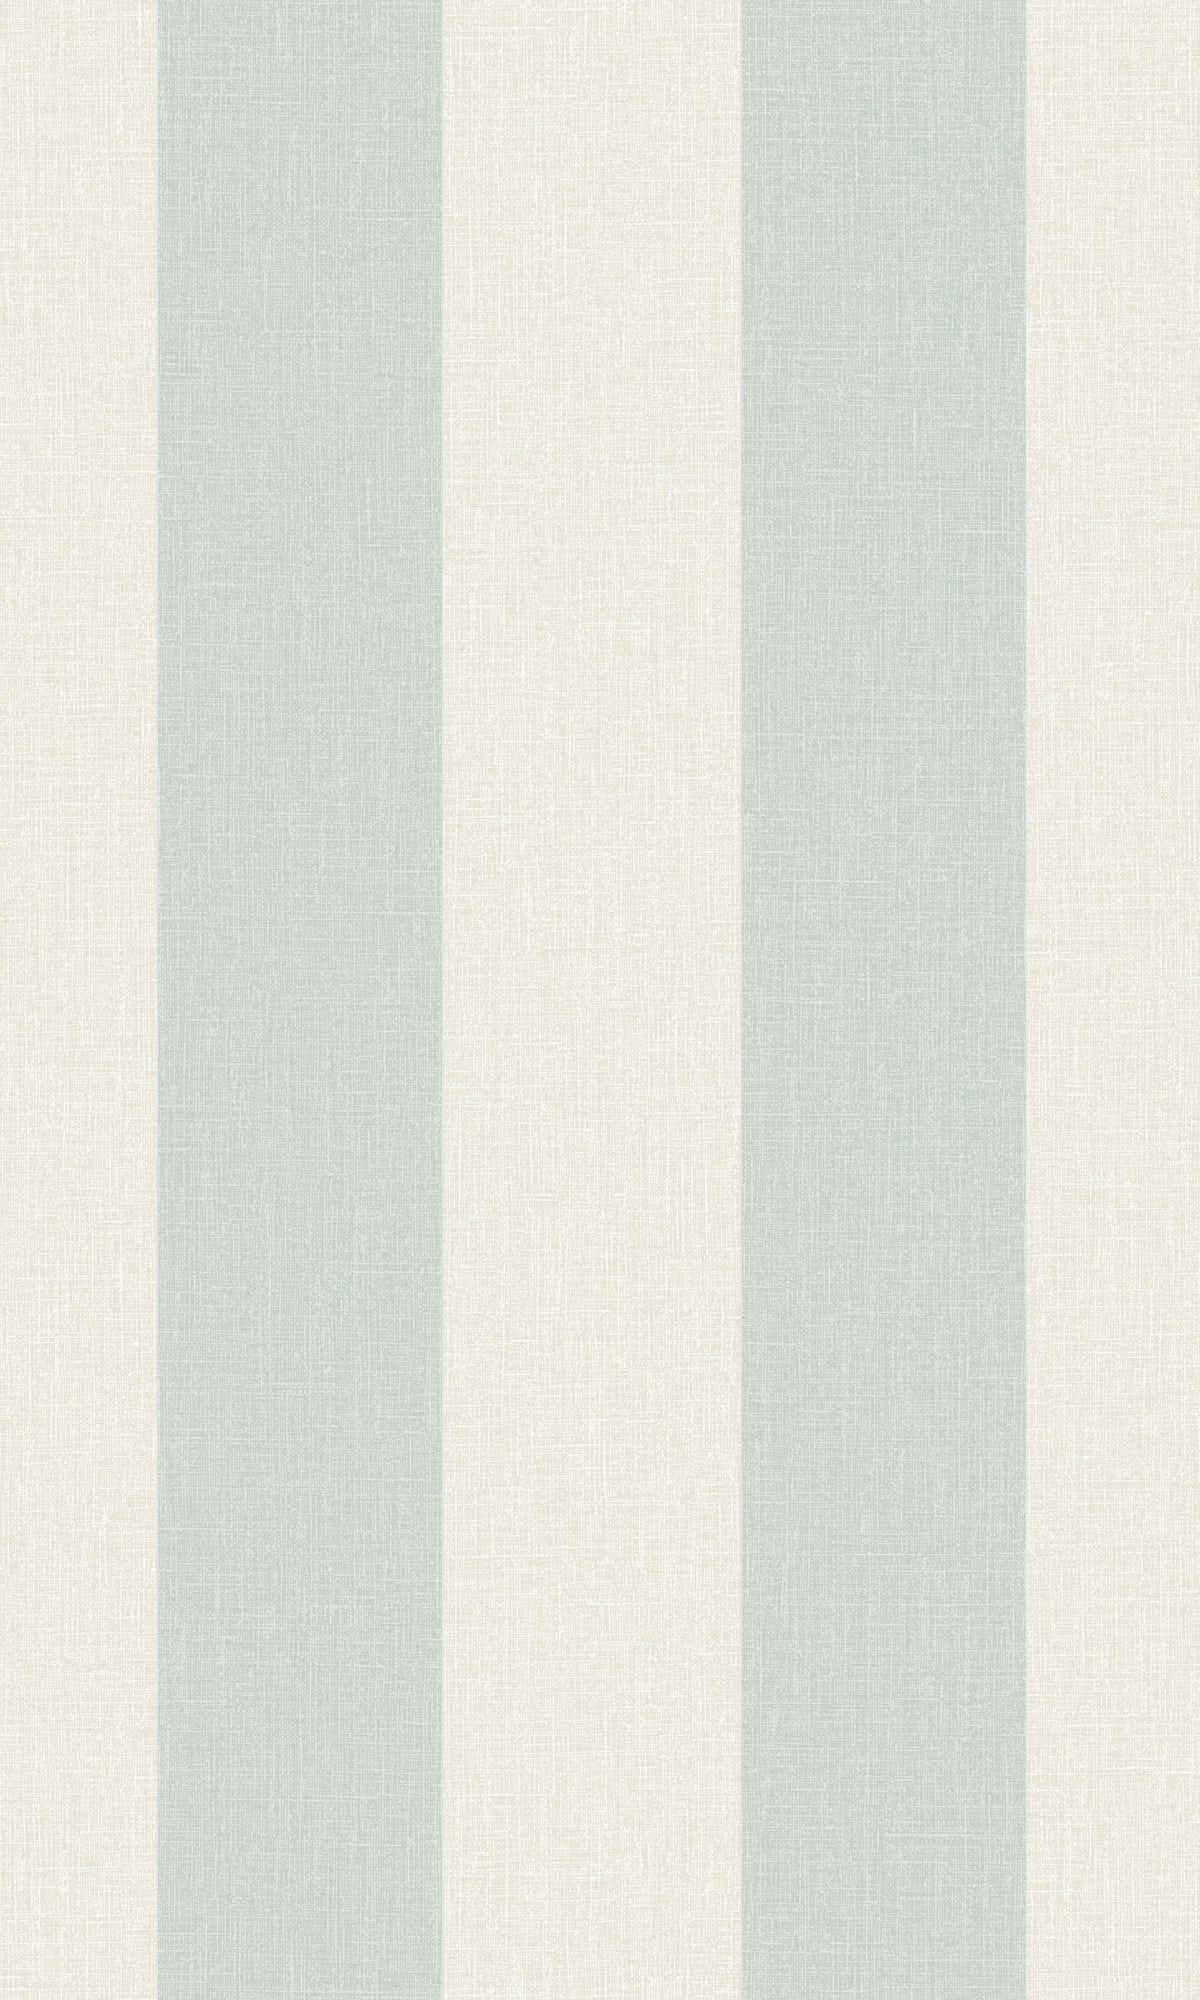 Aqua Simple Stripes Wallpaper R8776